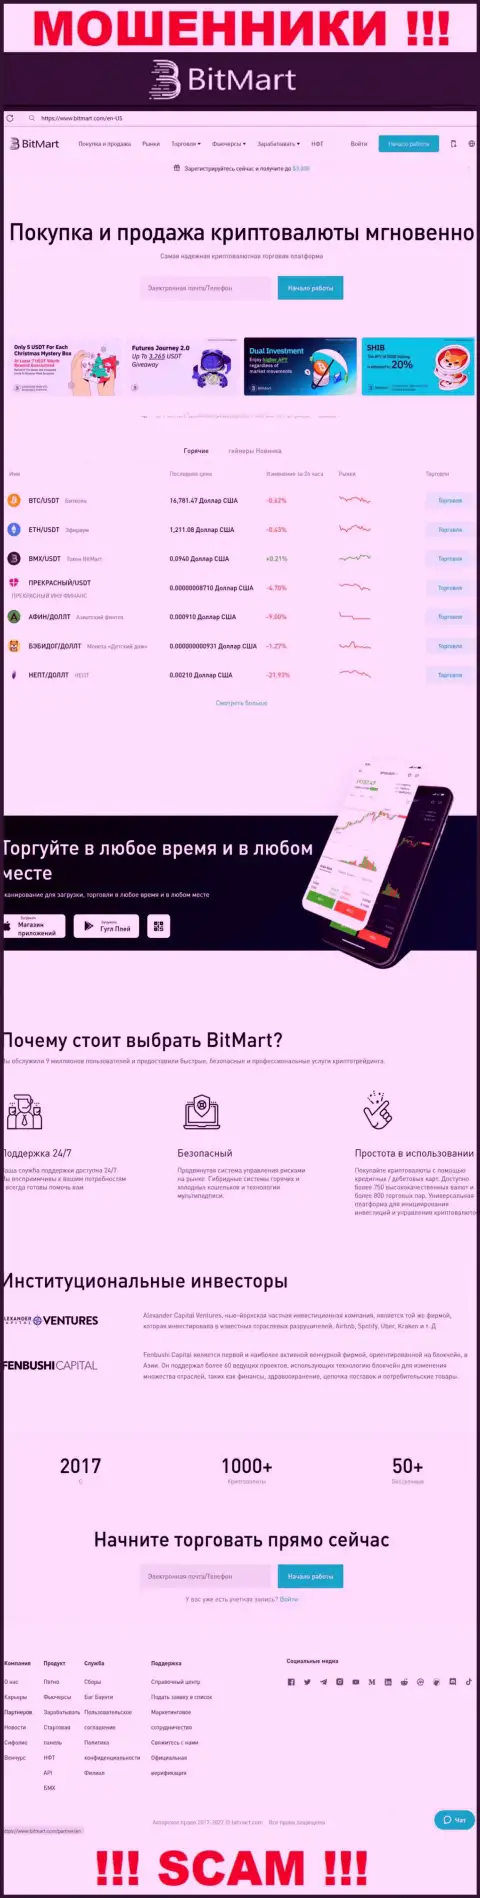 Вид официального информационного портала мошеннической компании BitMart